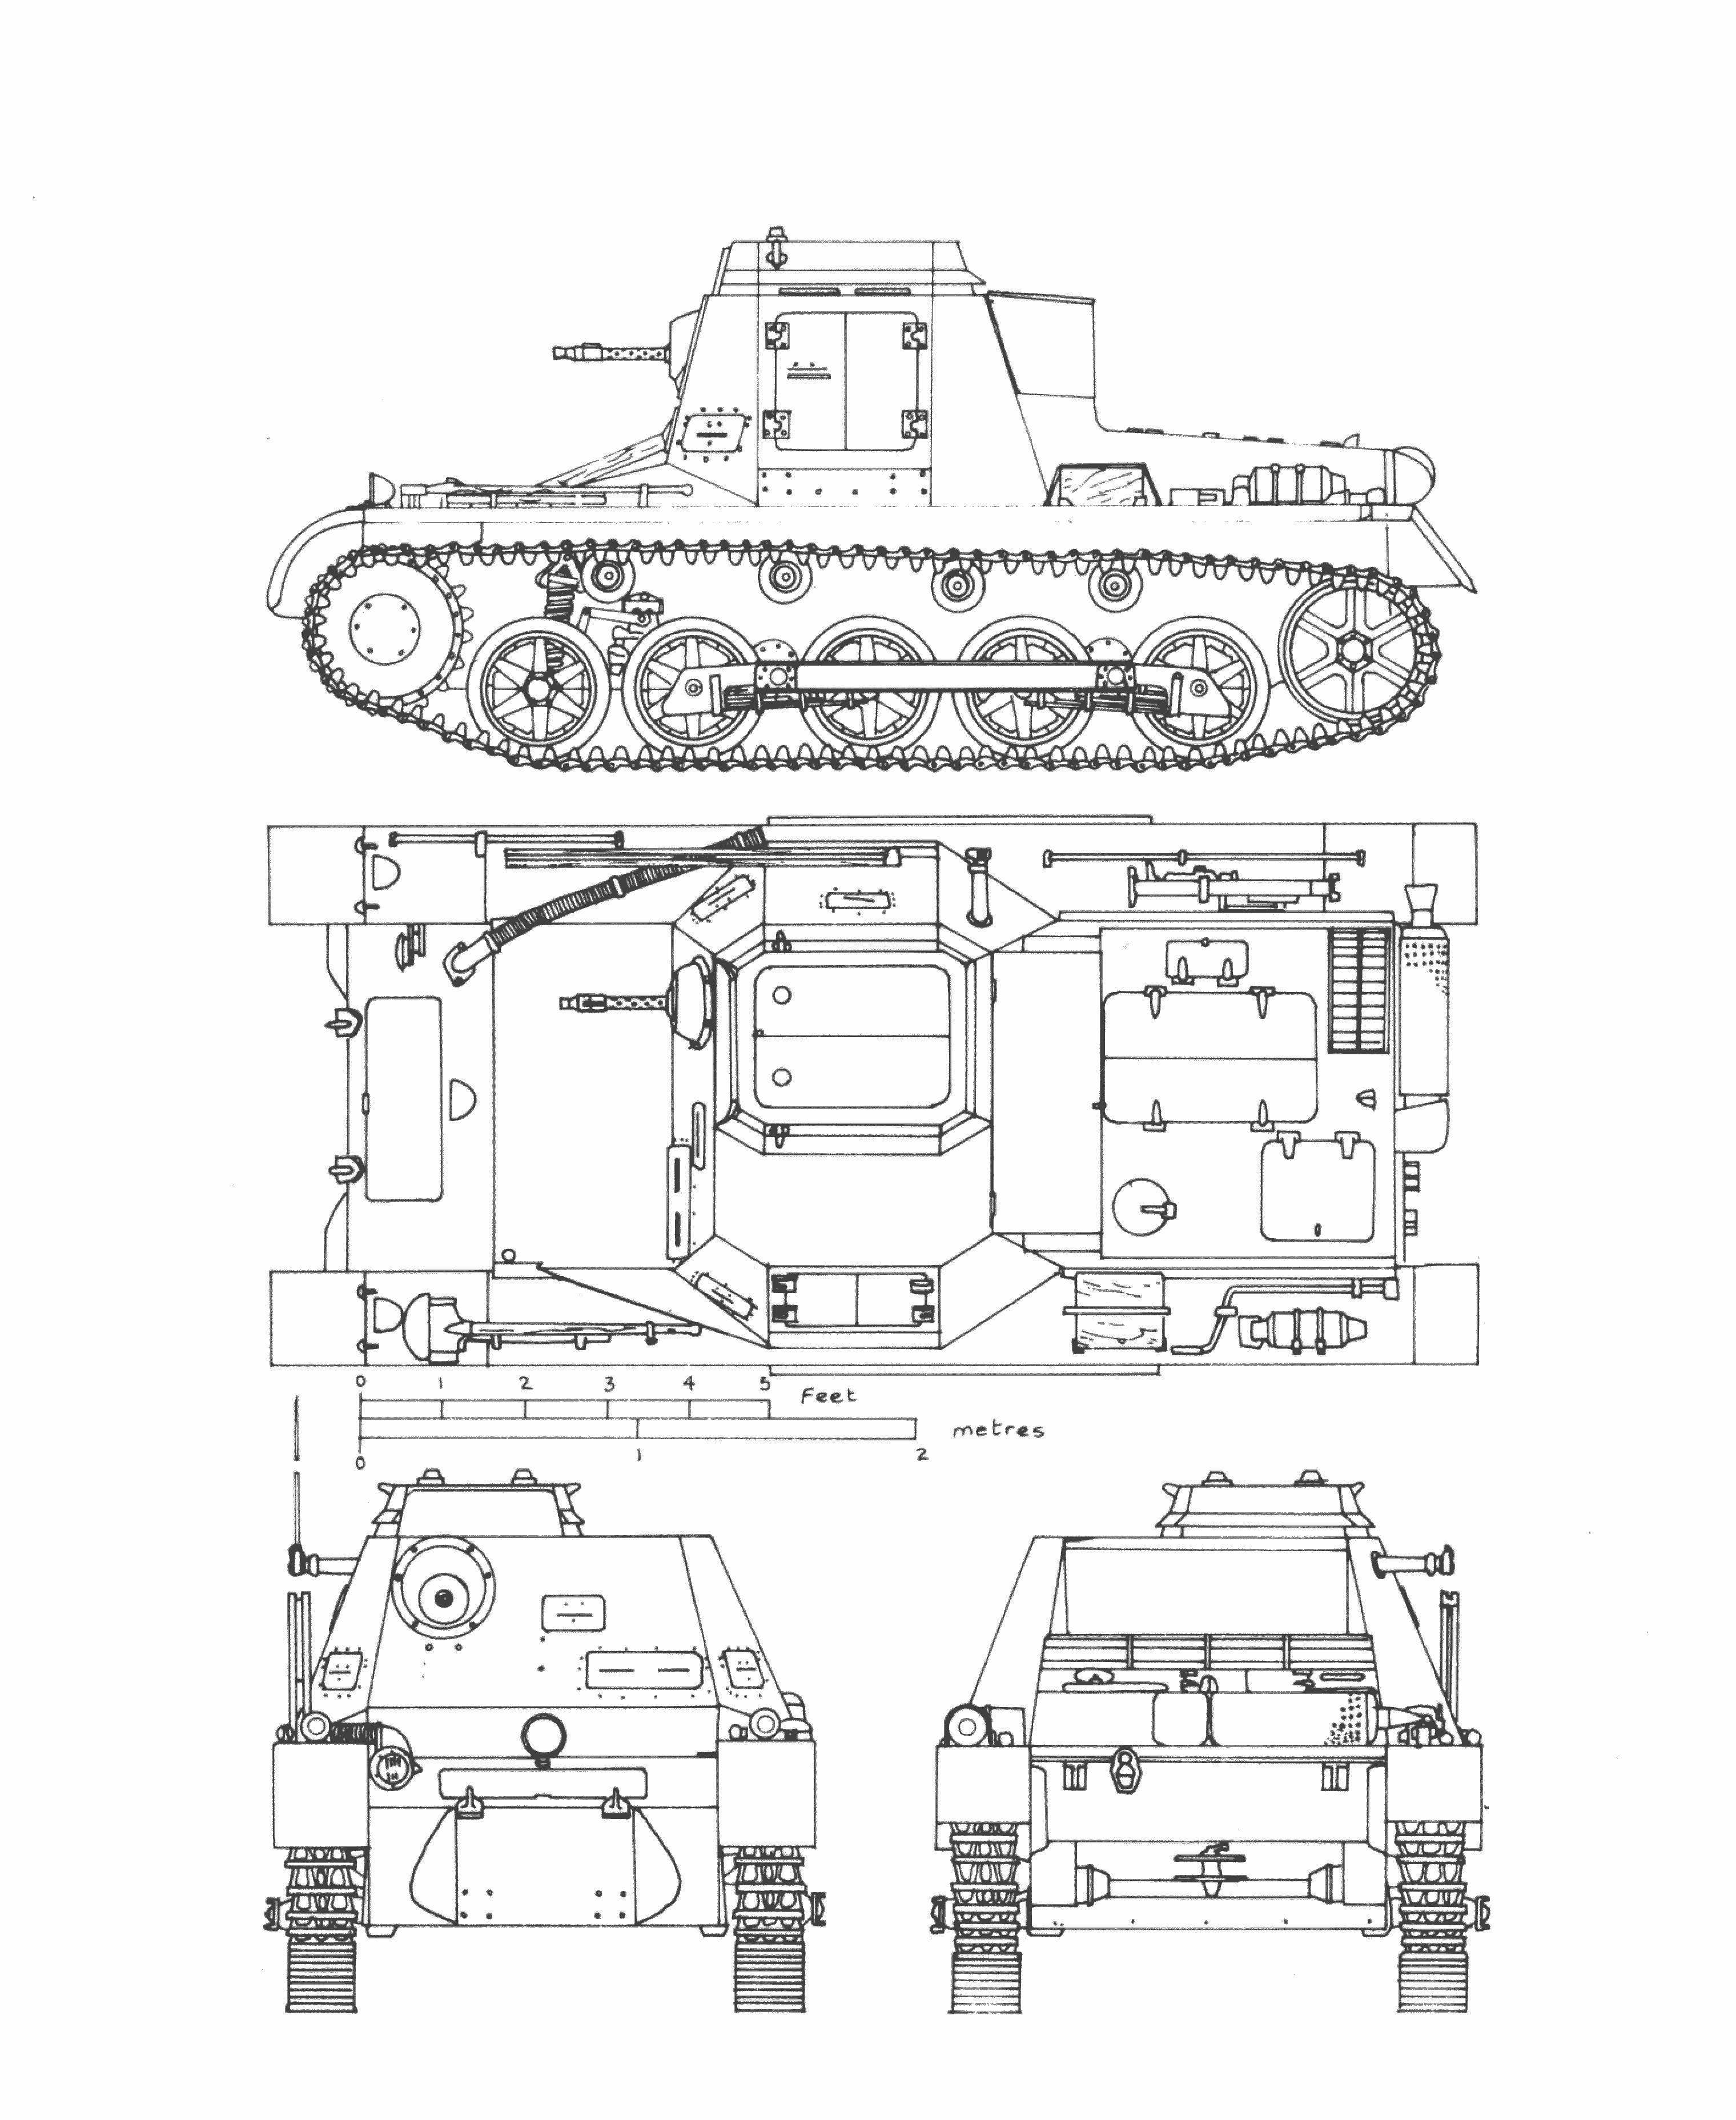 SdKfz 265 Panzerbefehlswagen blueprint